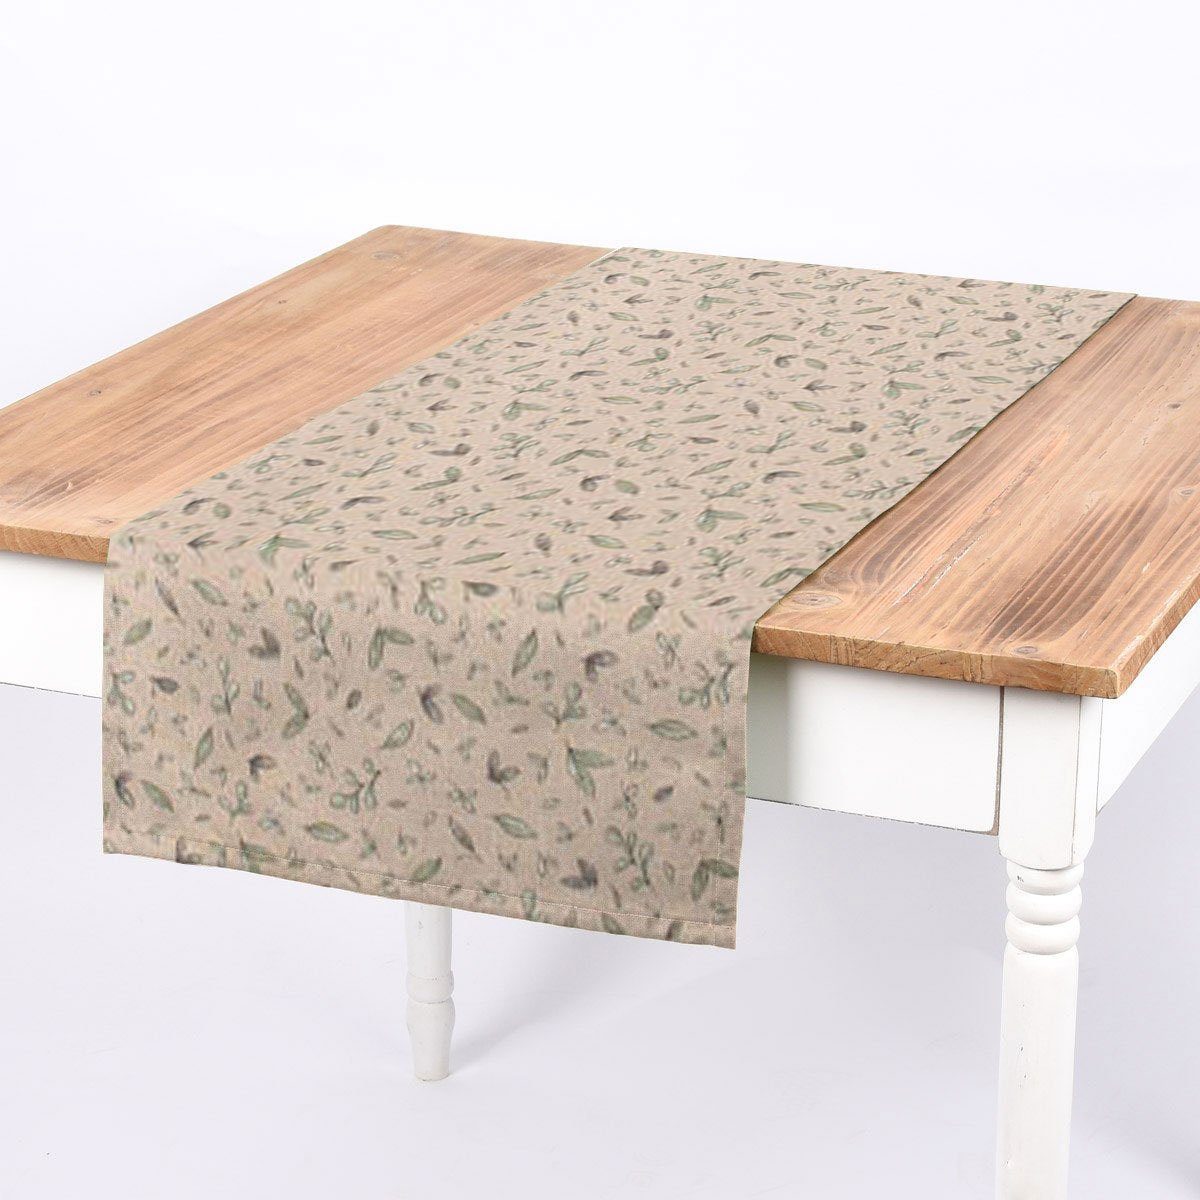 SCHÖNER LEBEN. Tischläufer SCHÖNER LEBEN. Tischläufer Blätter natur grün 40x160cm, handmade